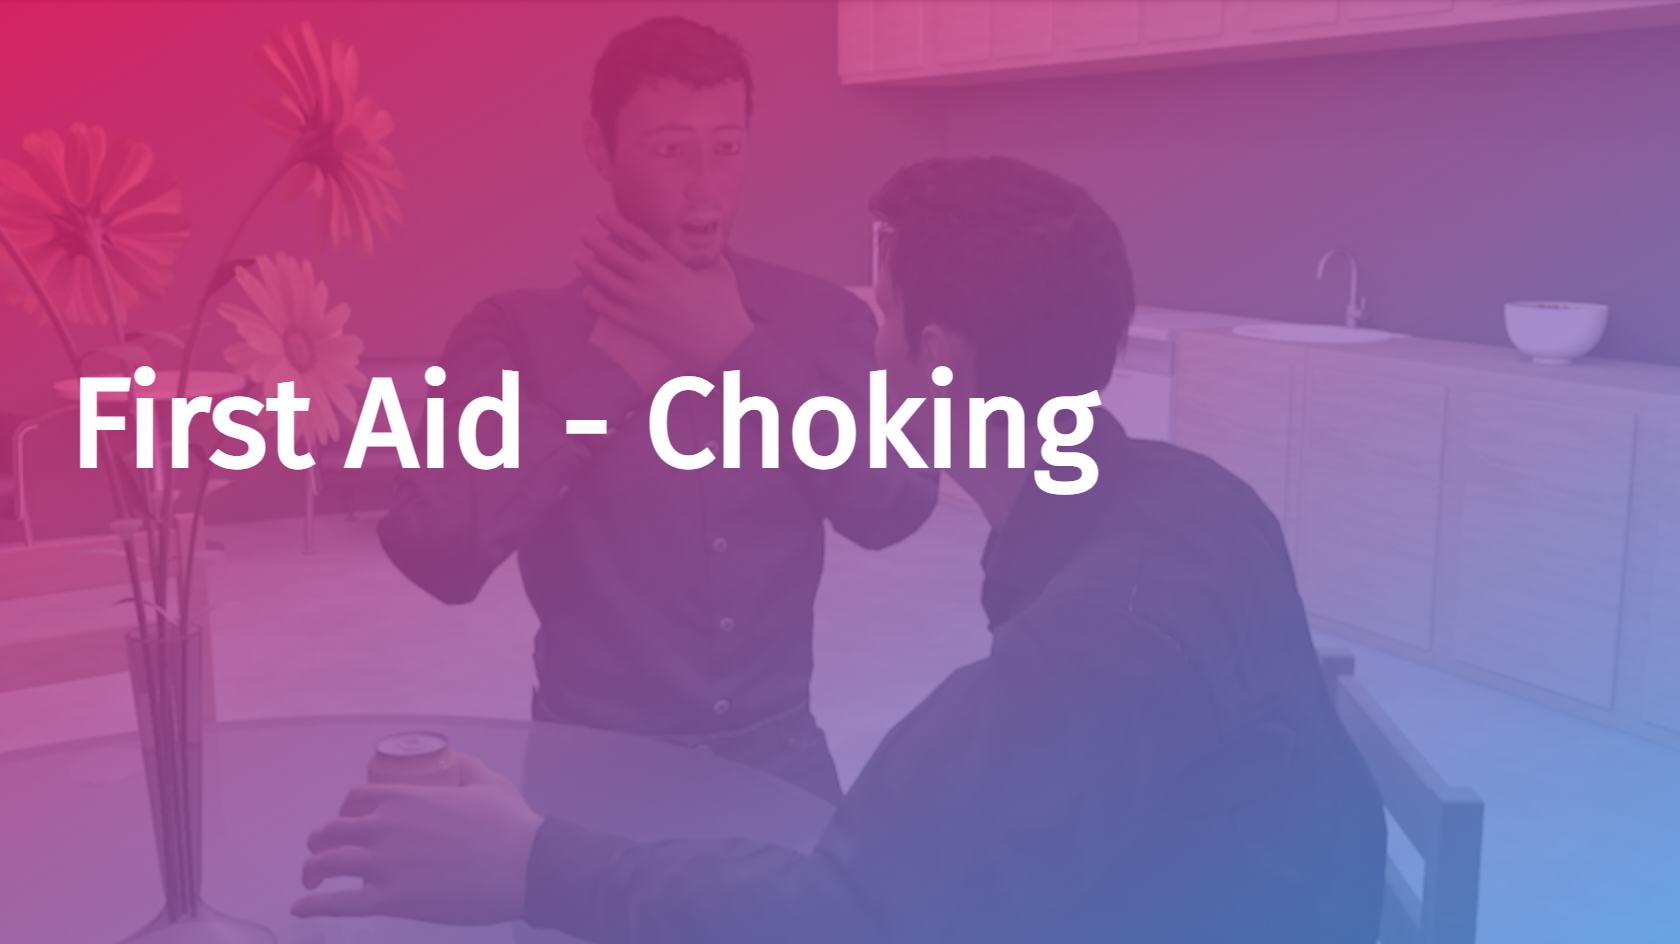 First Aid - Choking